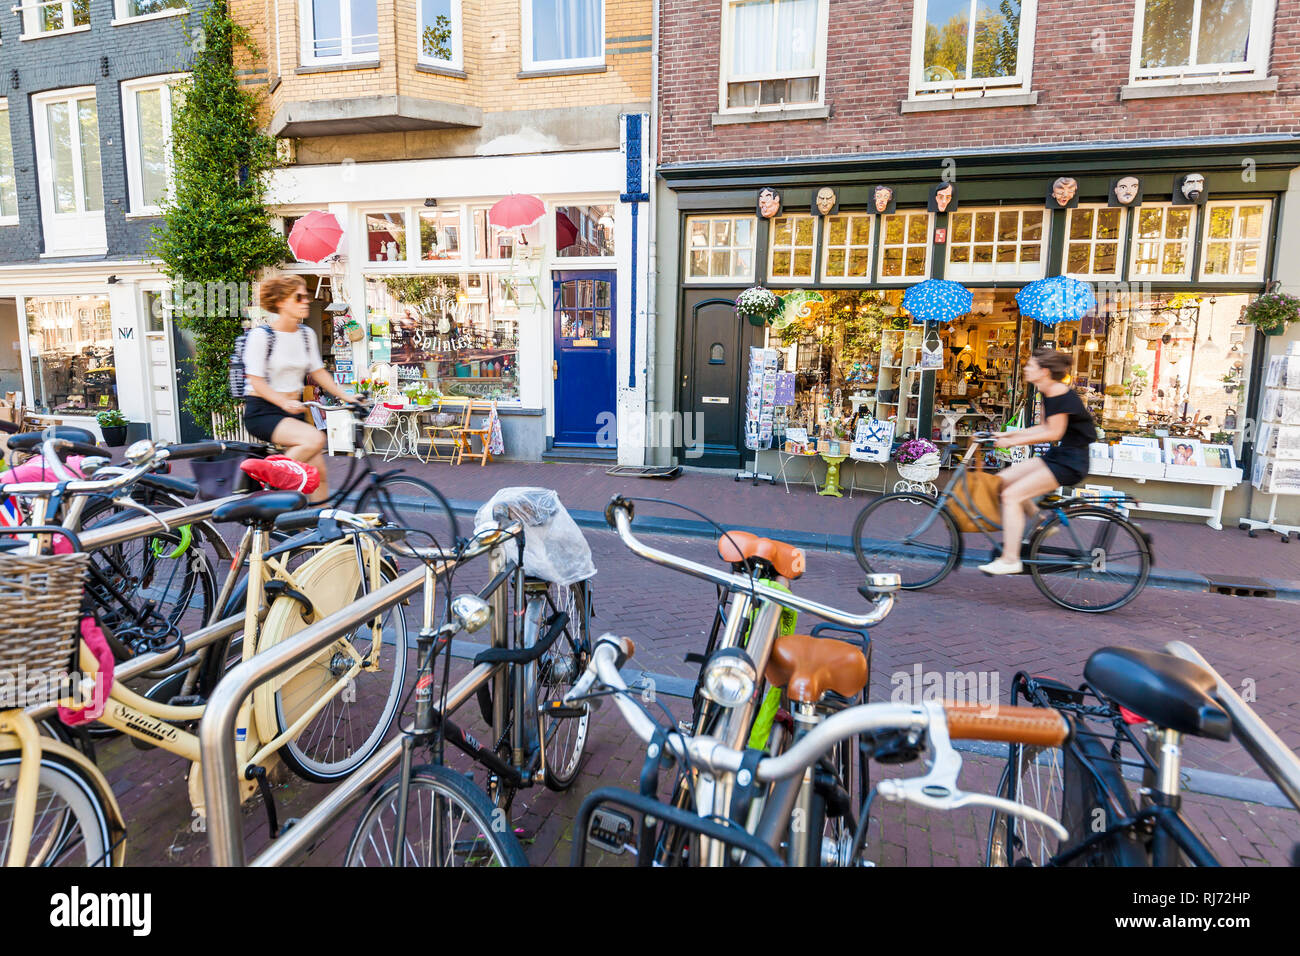 Niederlande, Amsterdam, Altstadt, Prinsengracht, verschiedene Läden, Fahrräder, Radfahrer Stock Photo